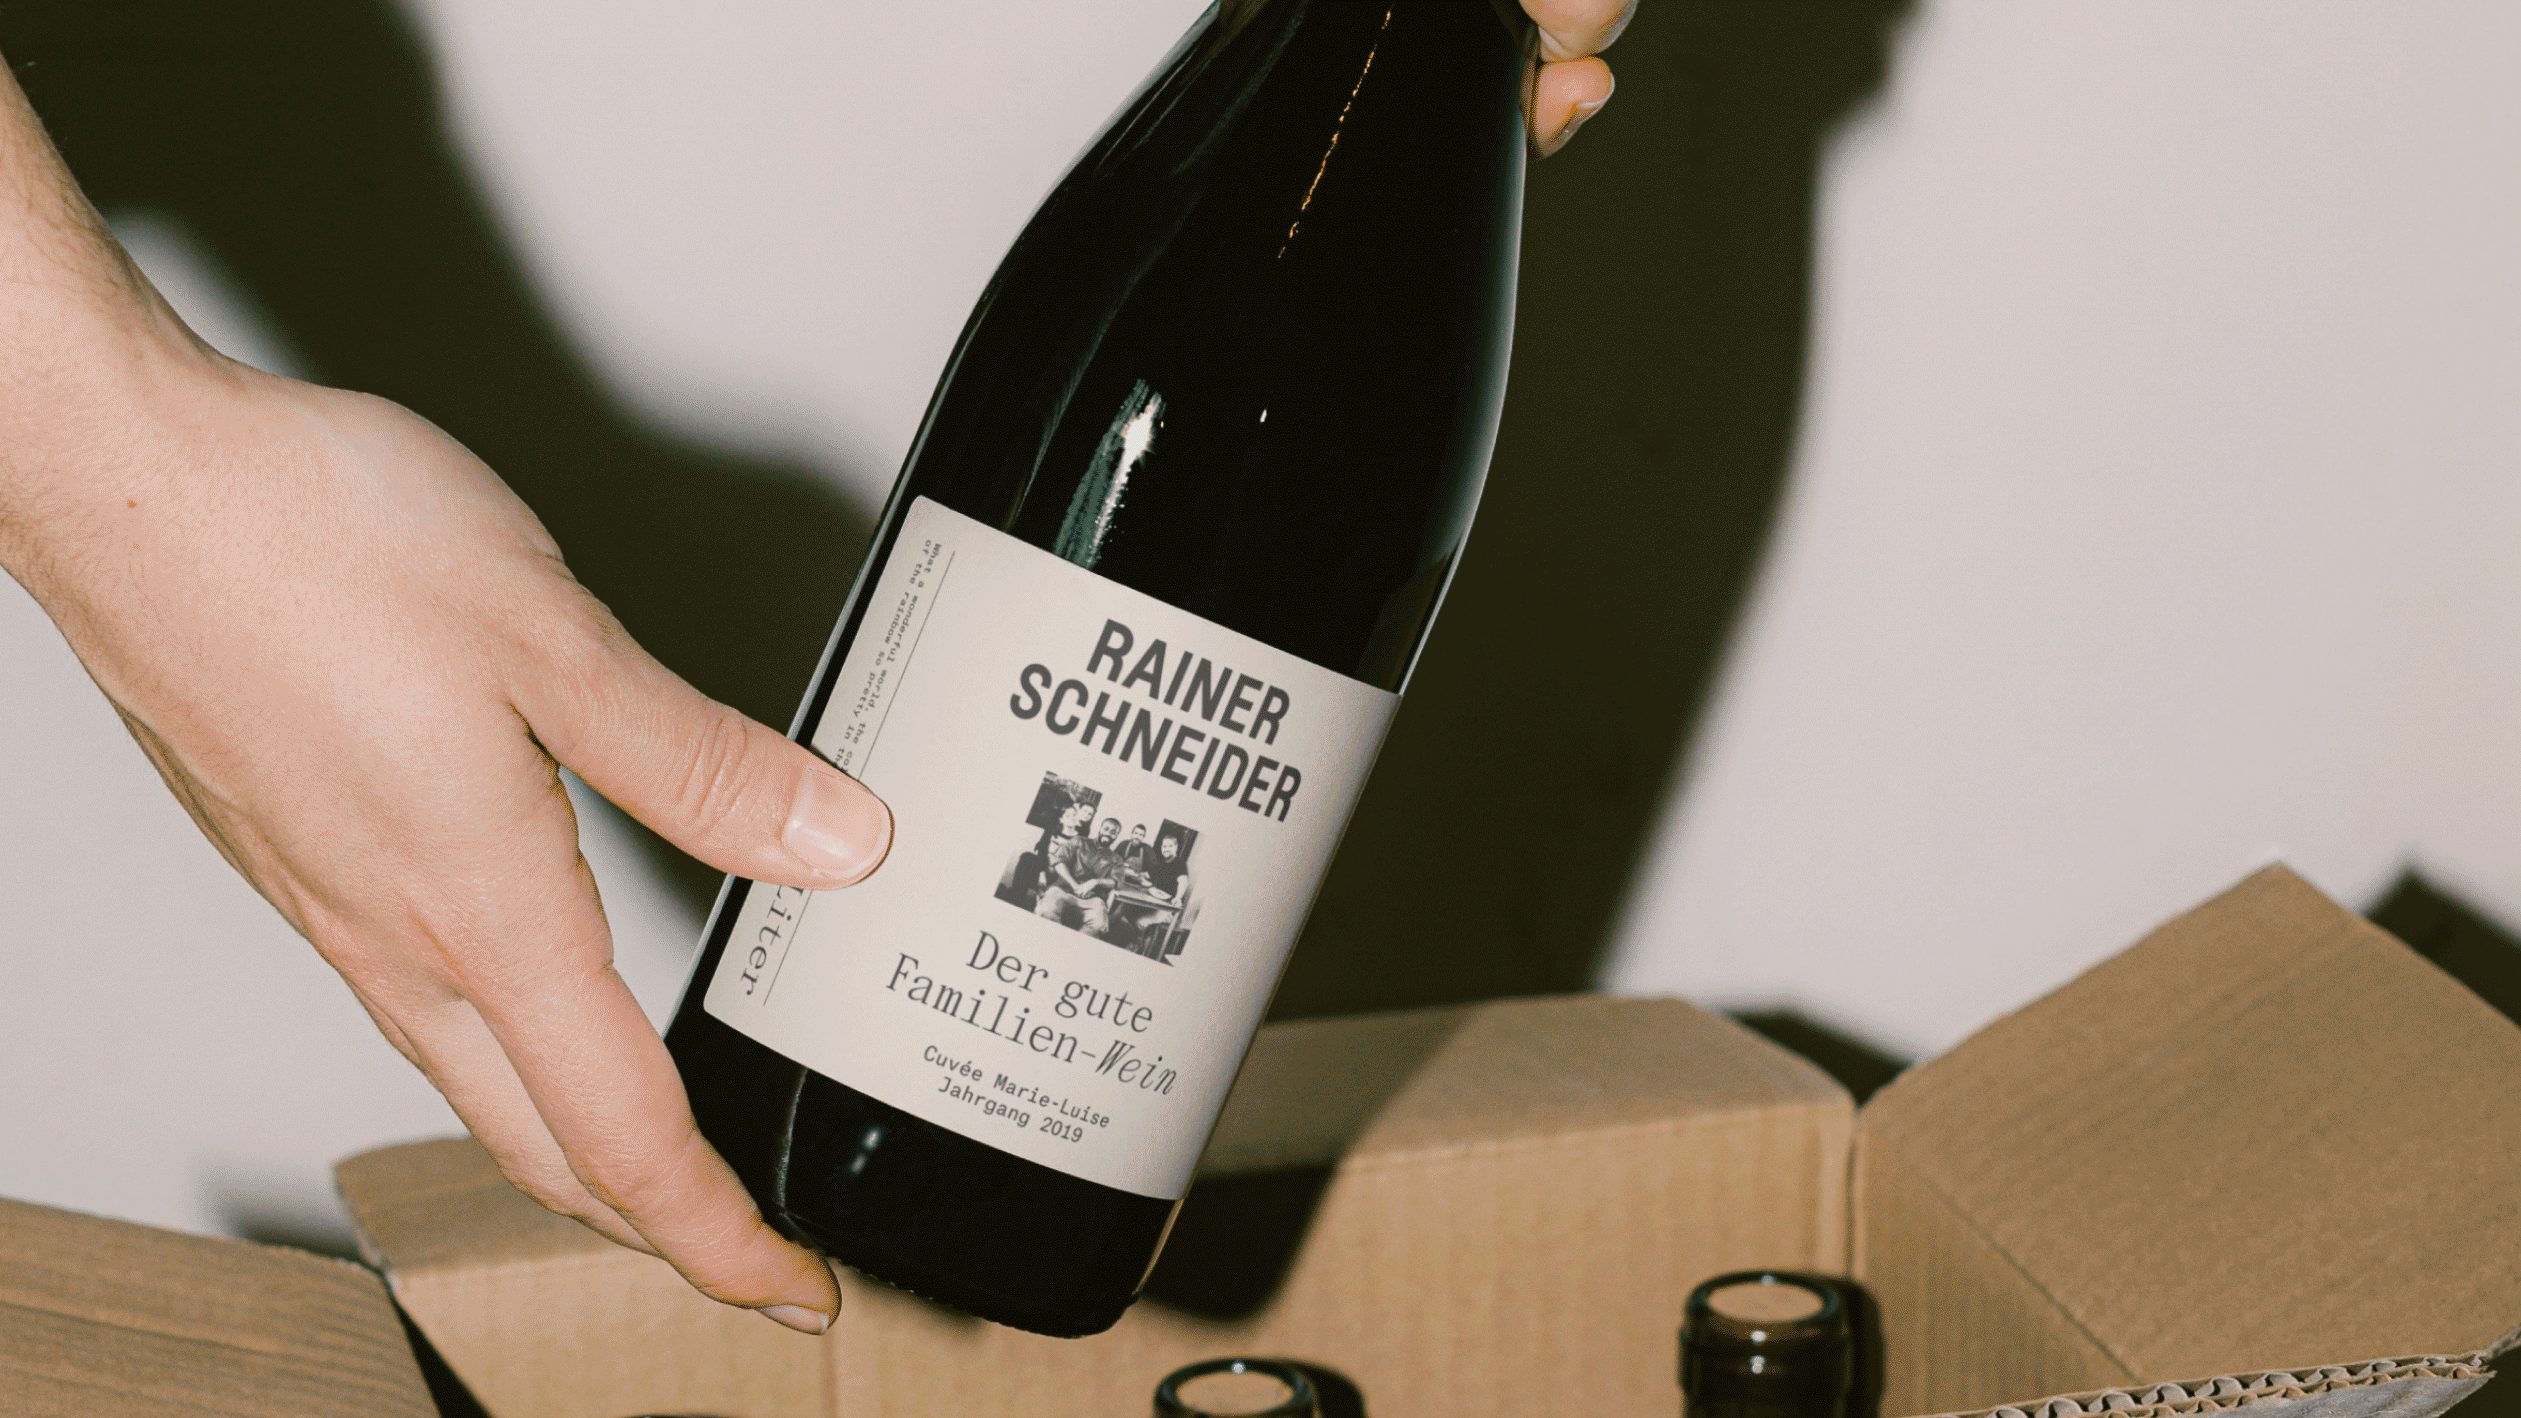 PaulWatmough-Rainer-Schneider-wine-bottle